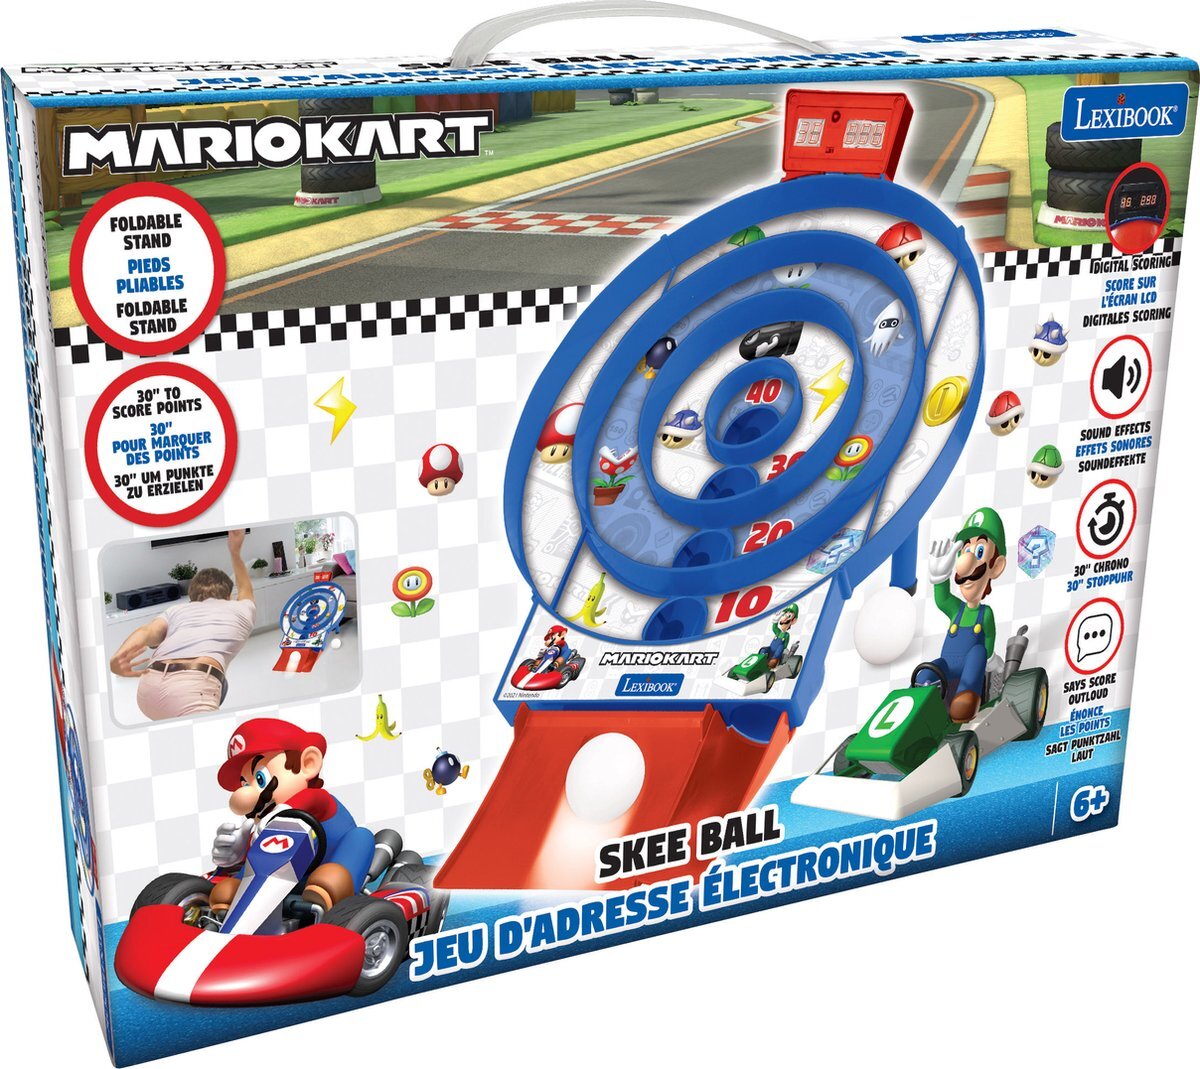 Lexibook Mario Kart Target Shoot - Elektronisch spel met LCD-scherm en 2 ballen